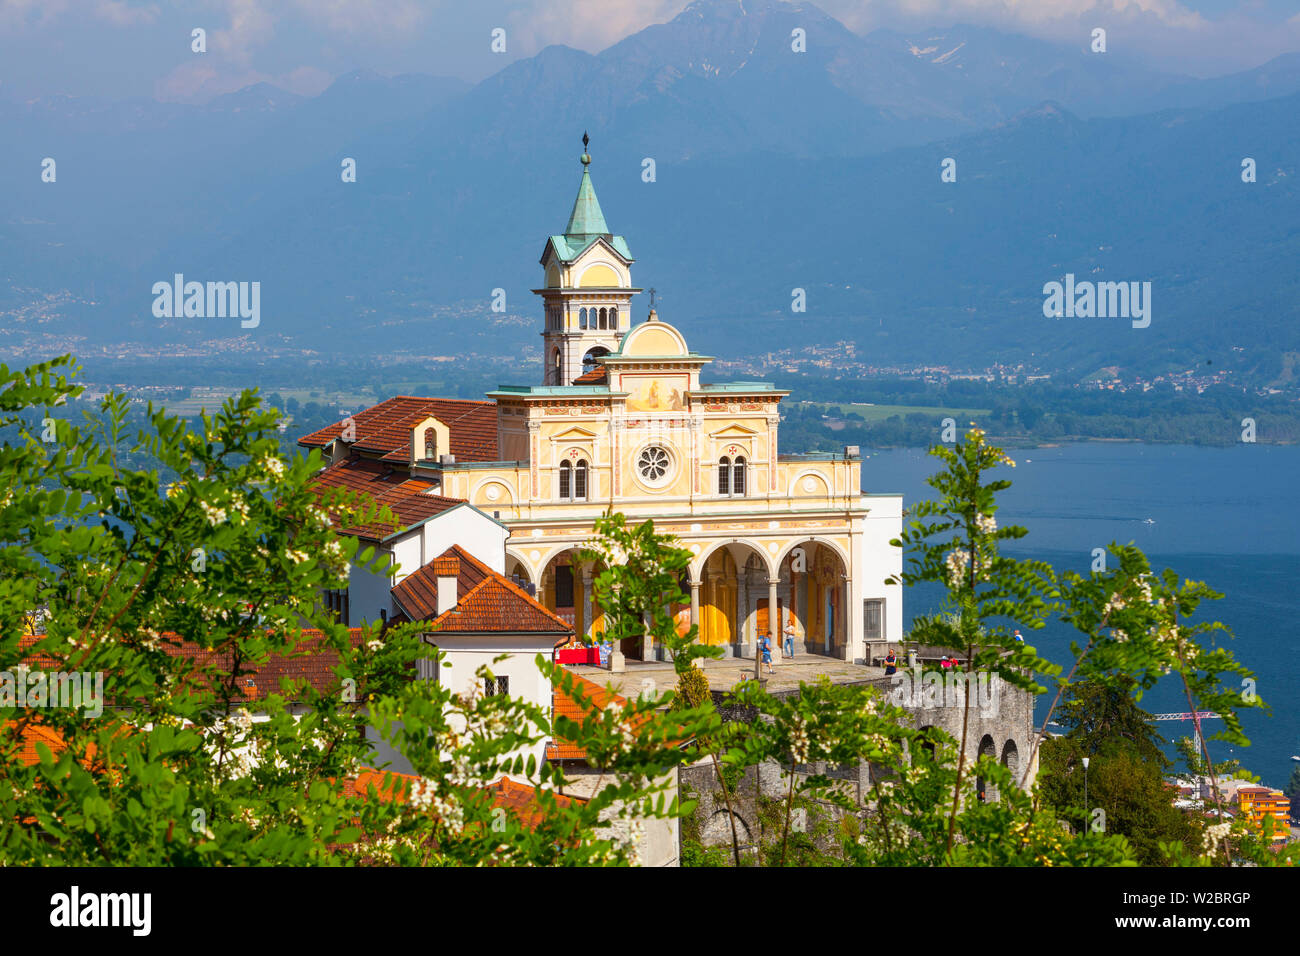 Elevated view over the picturesque Sanctuary of Madonna del Sasso, Locarno, Lake Maggiore, Tessin, Ticino, Switzerland Stock Photo